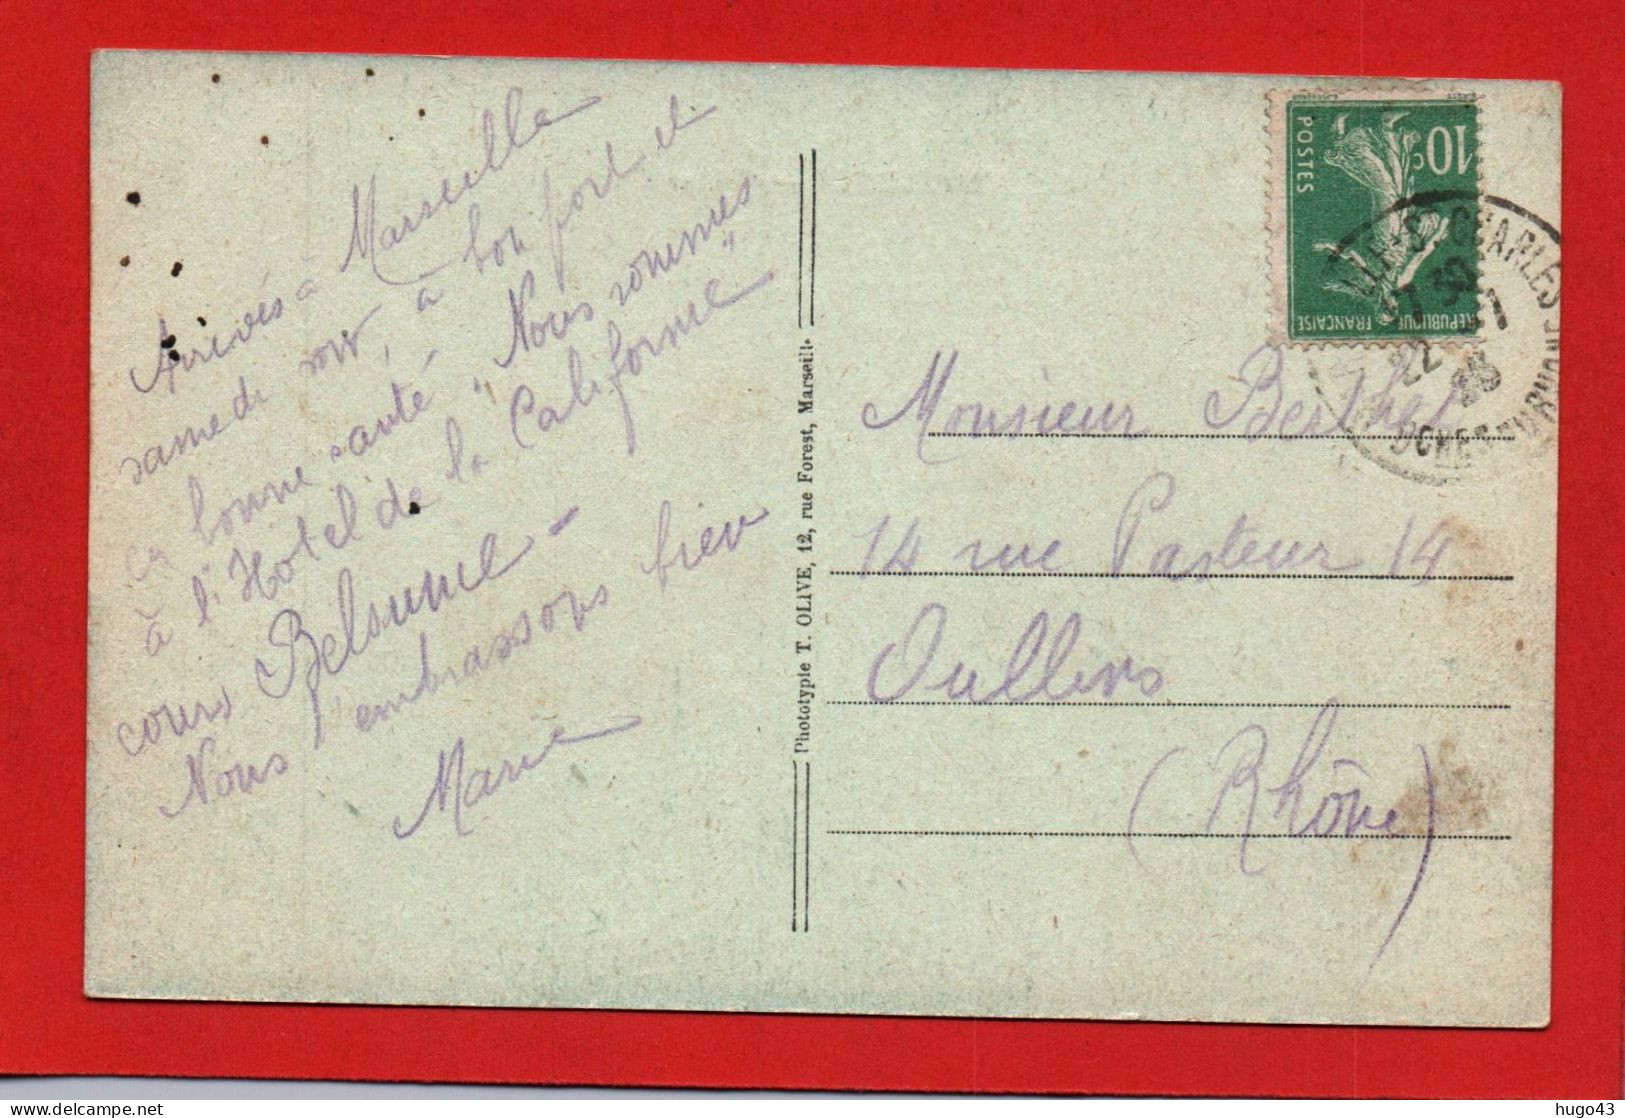 (RECTO / VERSO) MARSEILLE EN 1923 - CHATEAU D' IF - VOILIER - CPA COULEUR - Château D'If, Frioul, Iles ...